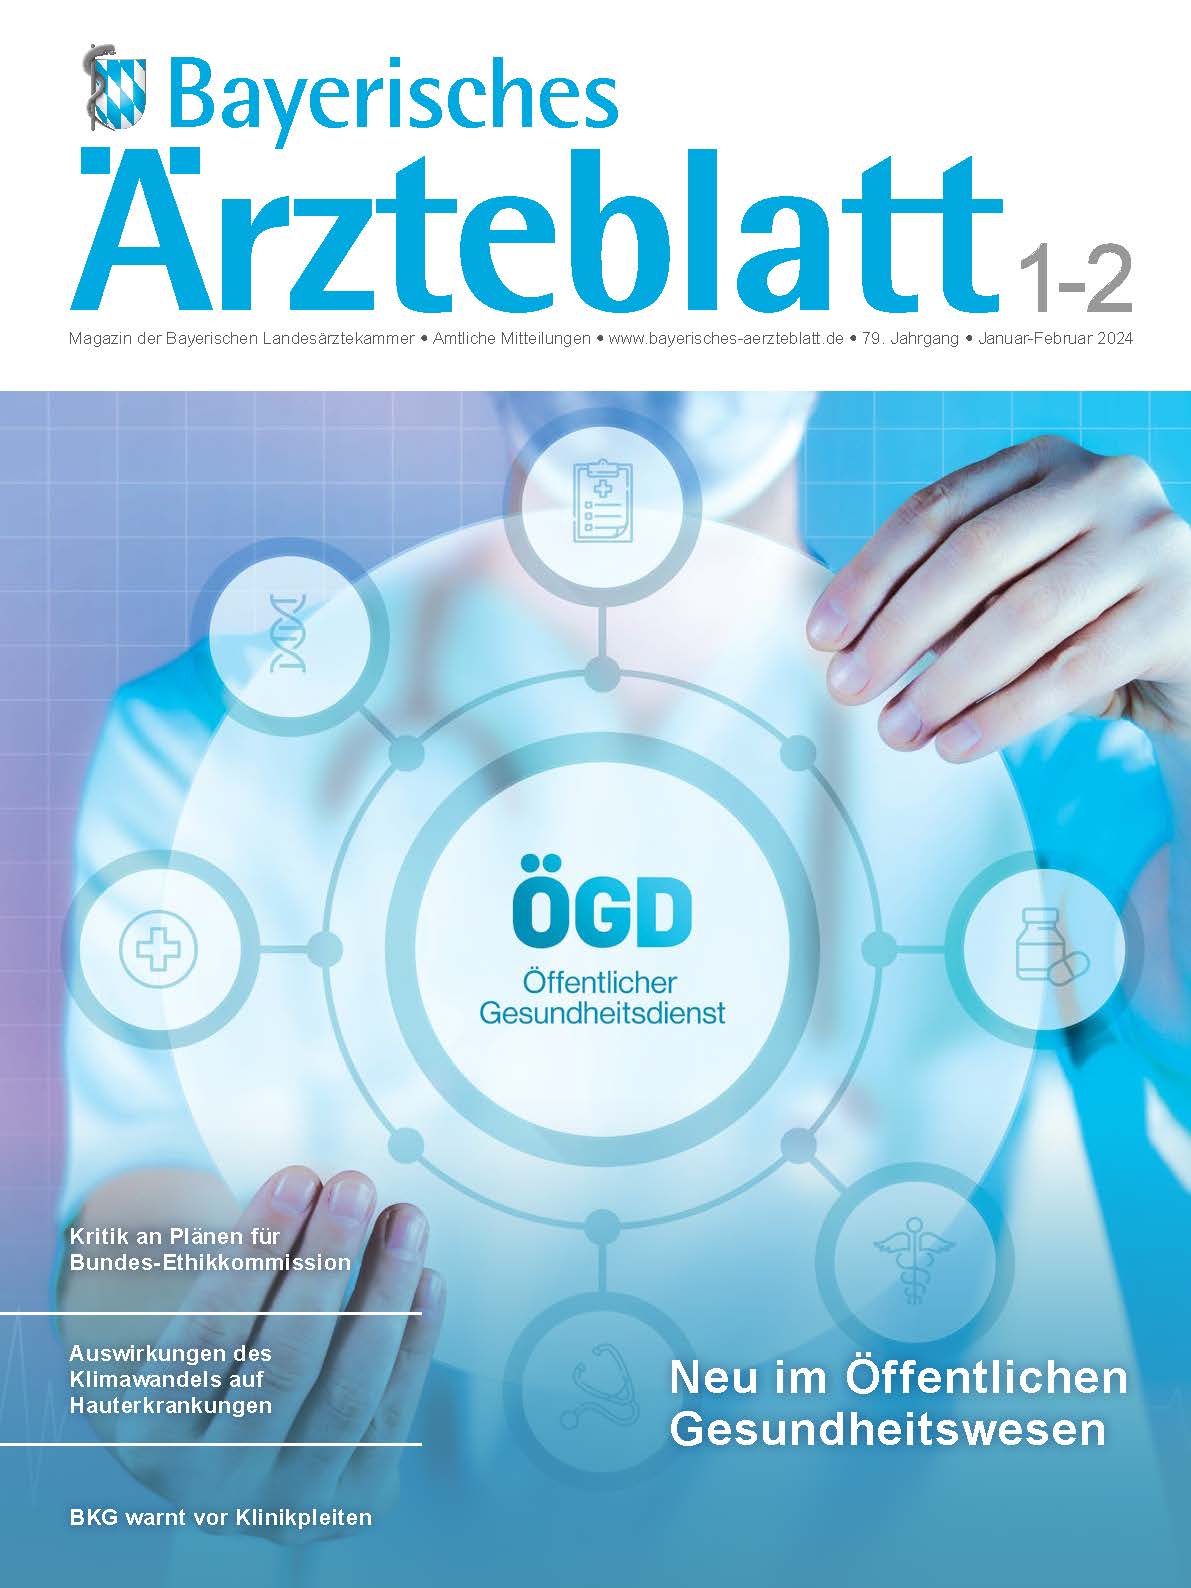 Neue Ausgabe des Bayerischen Ärzteblatts ist erschienen